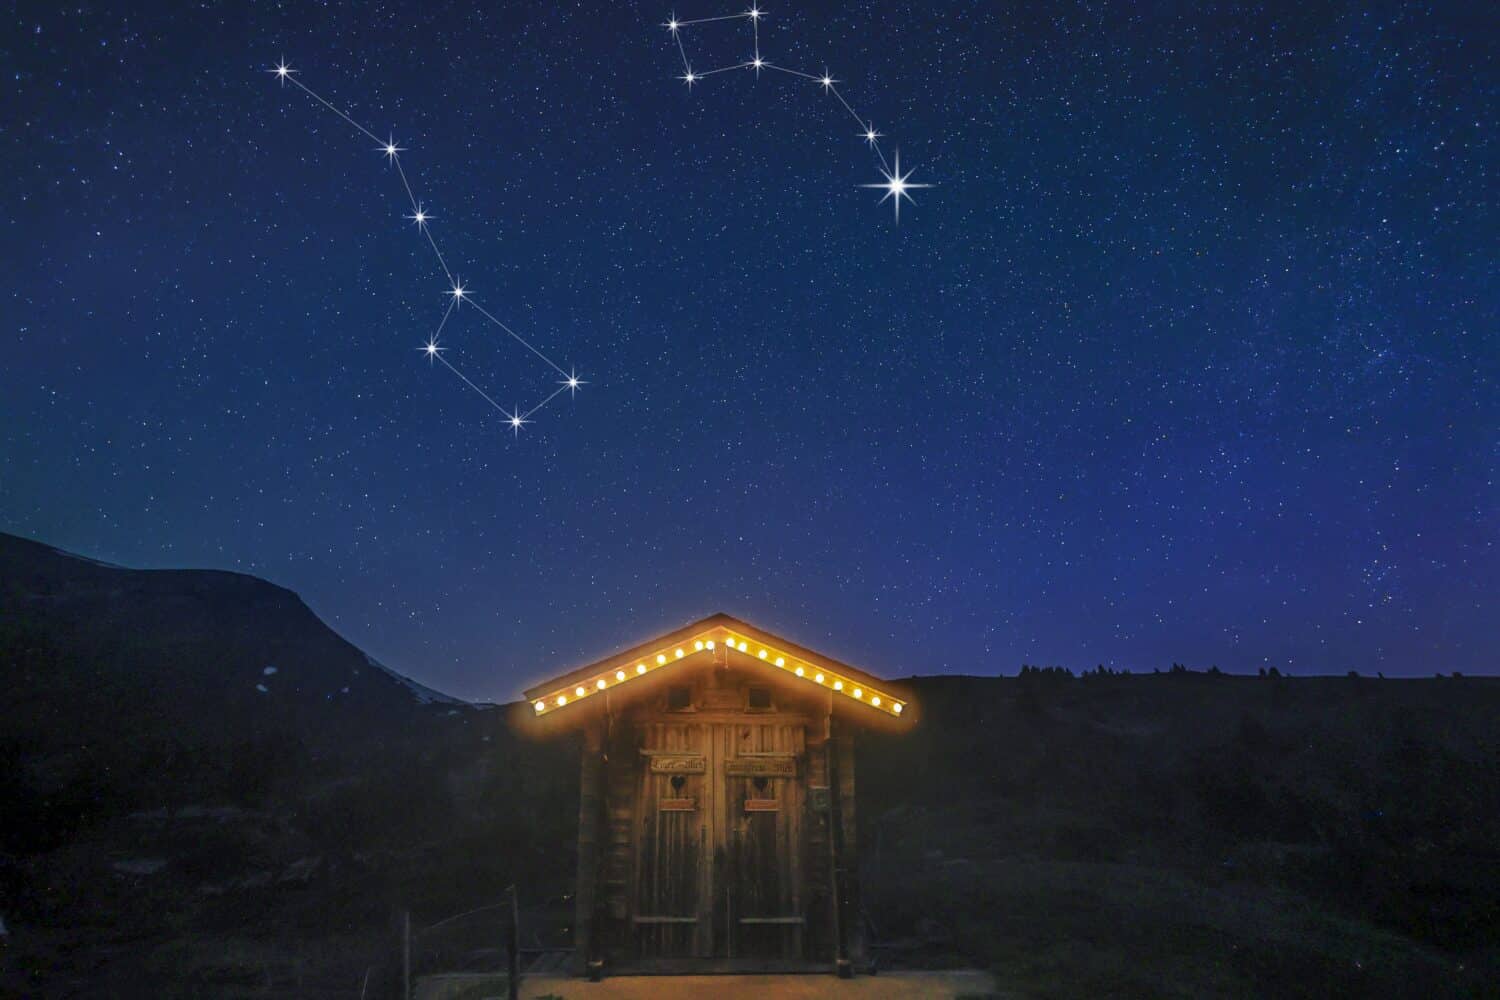 Una vera scena notturna su una baita di montagna con cielo stellato che mostra la costellazione dell'orso maggiore e dell'orsetto e la stella polare